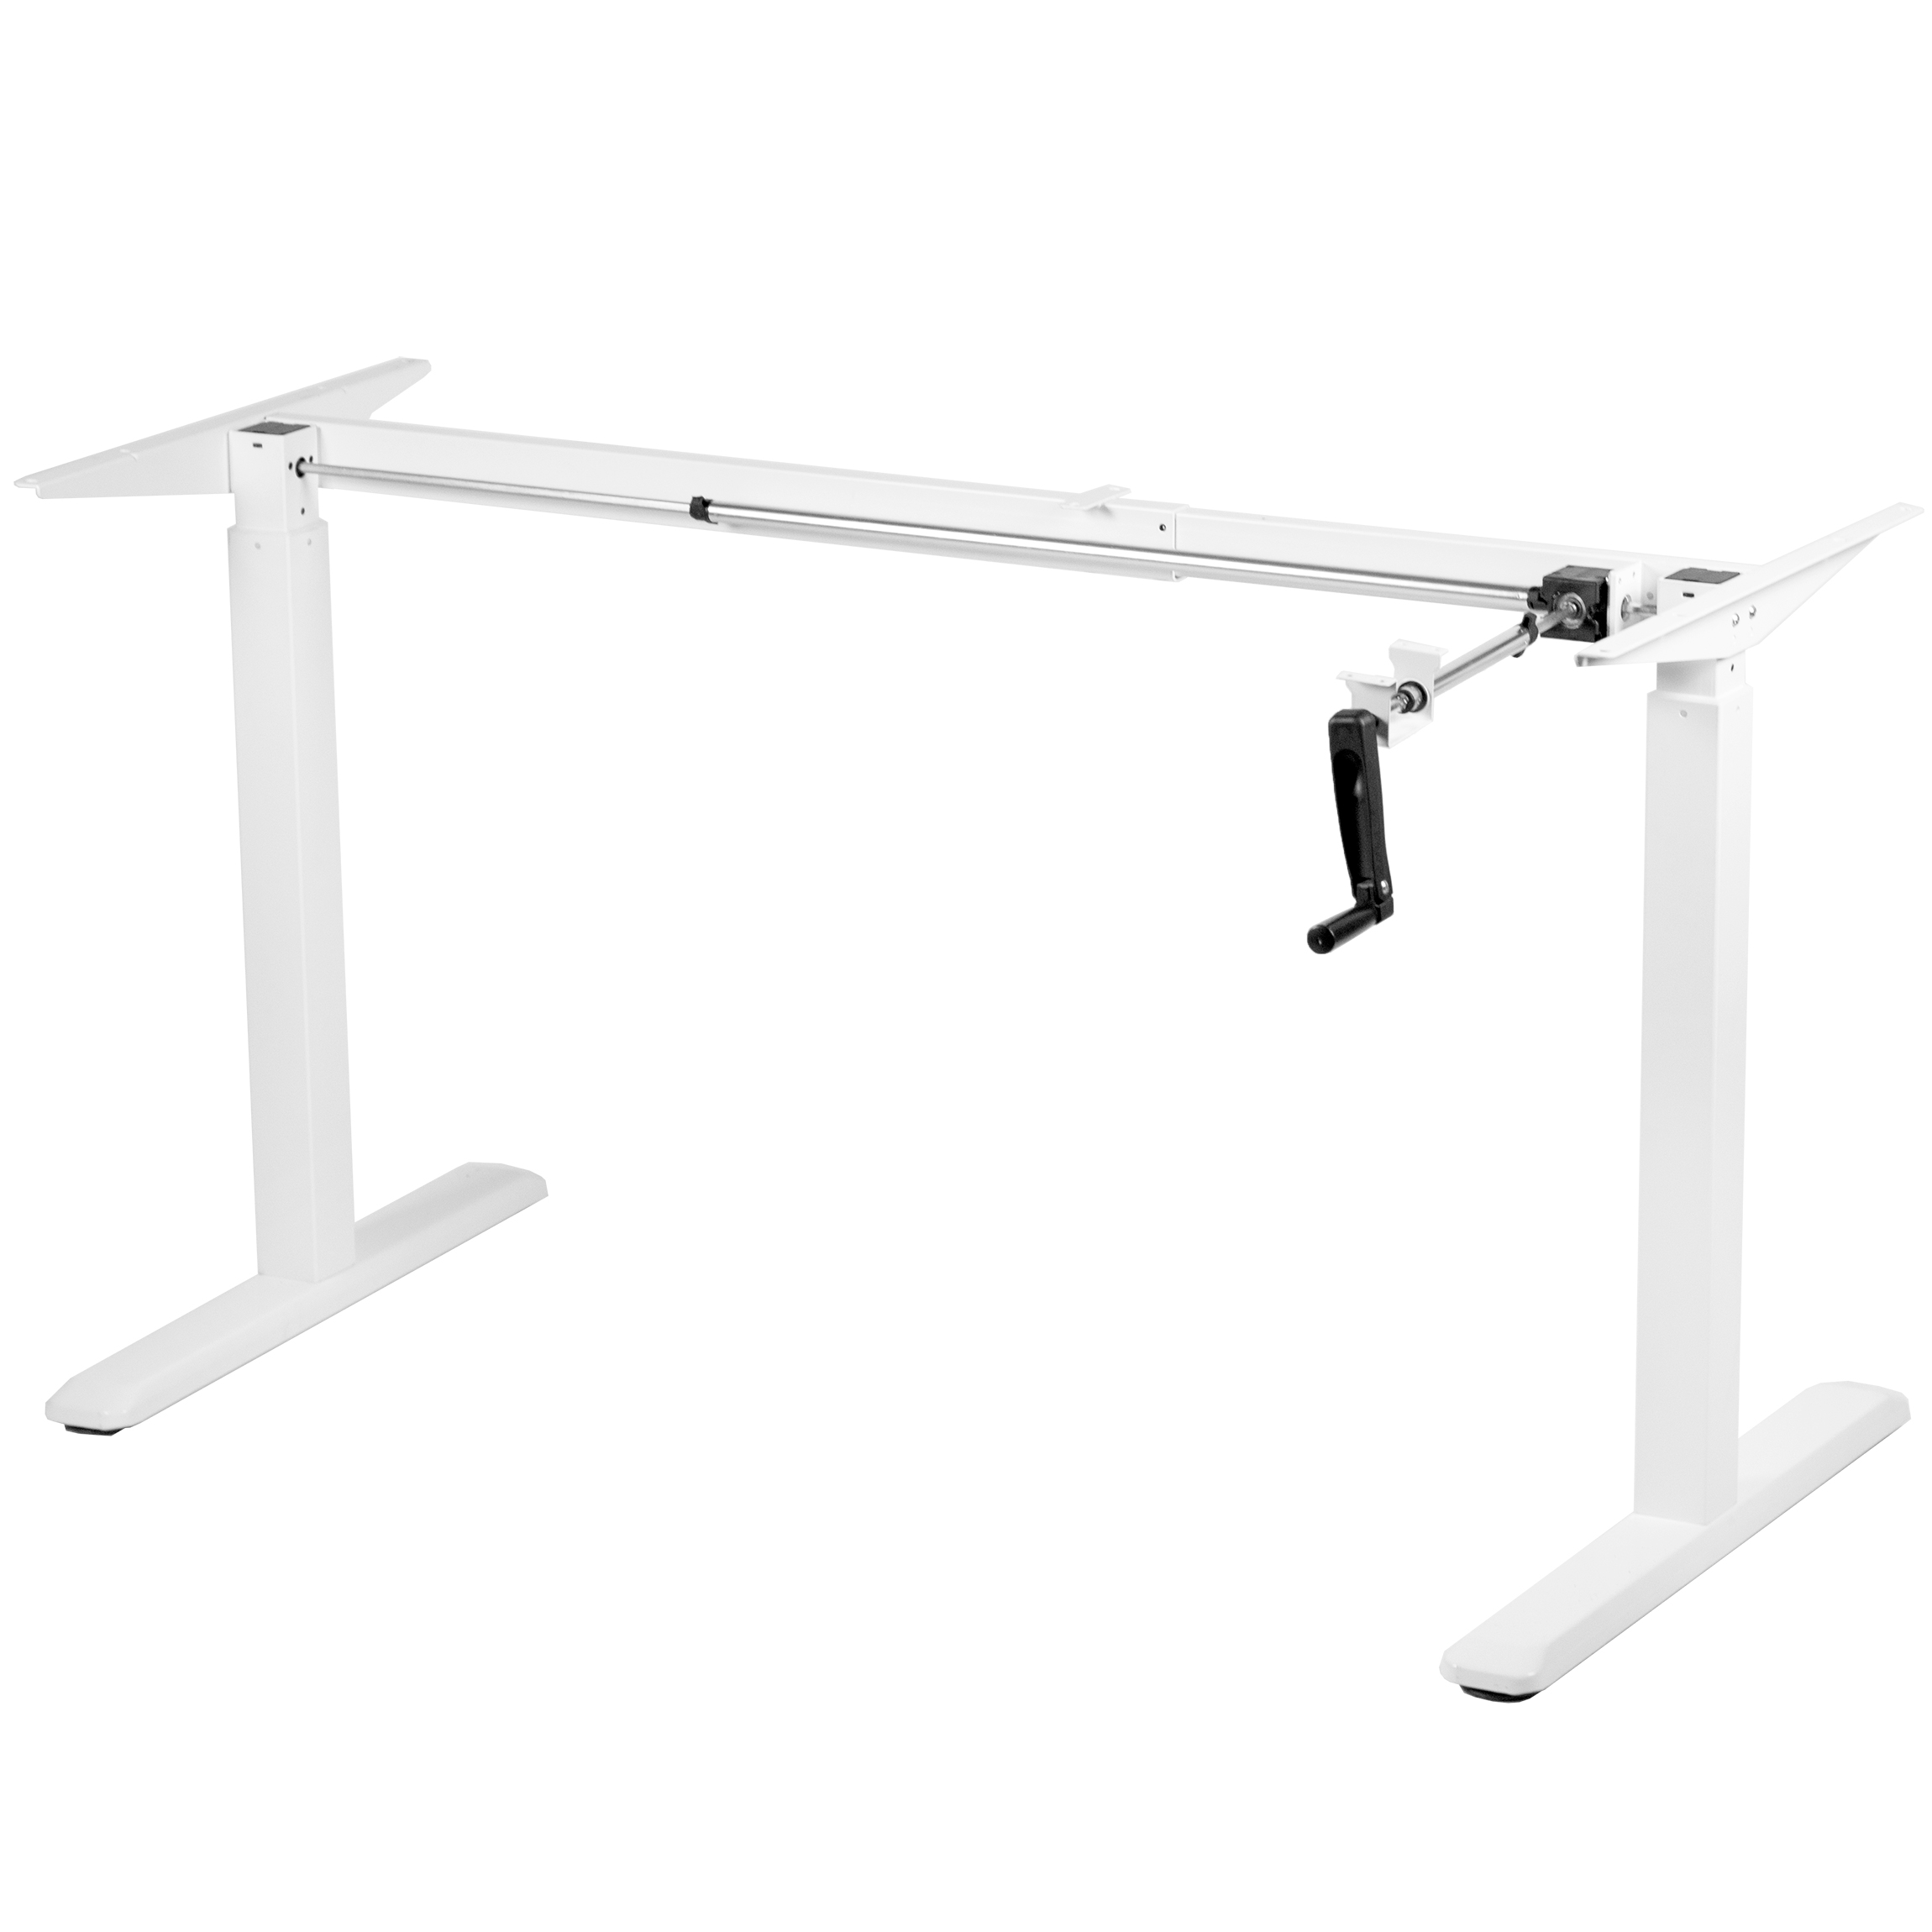 Adjustable Desk frame